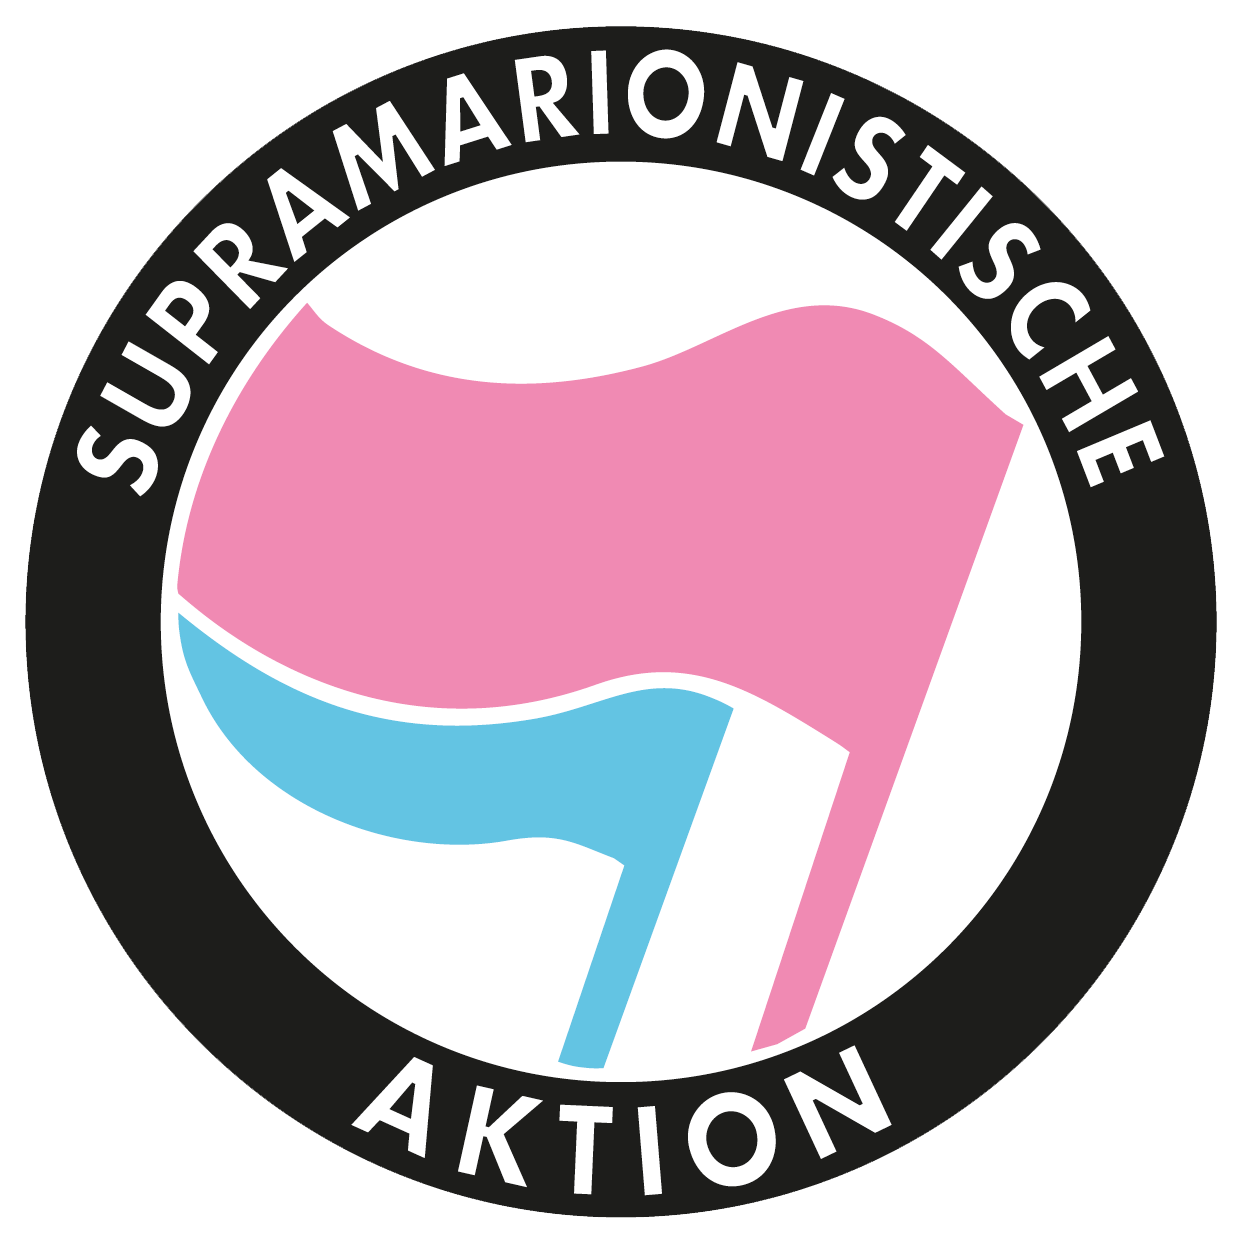 Logo der supramarionistischen Aktion